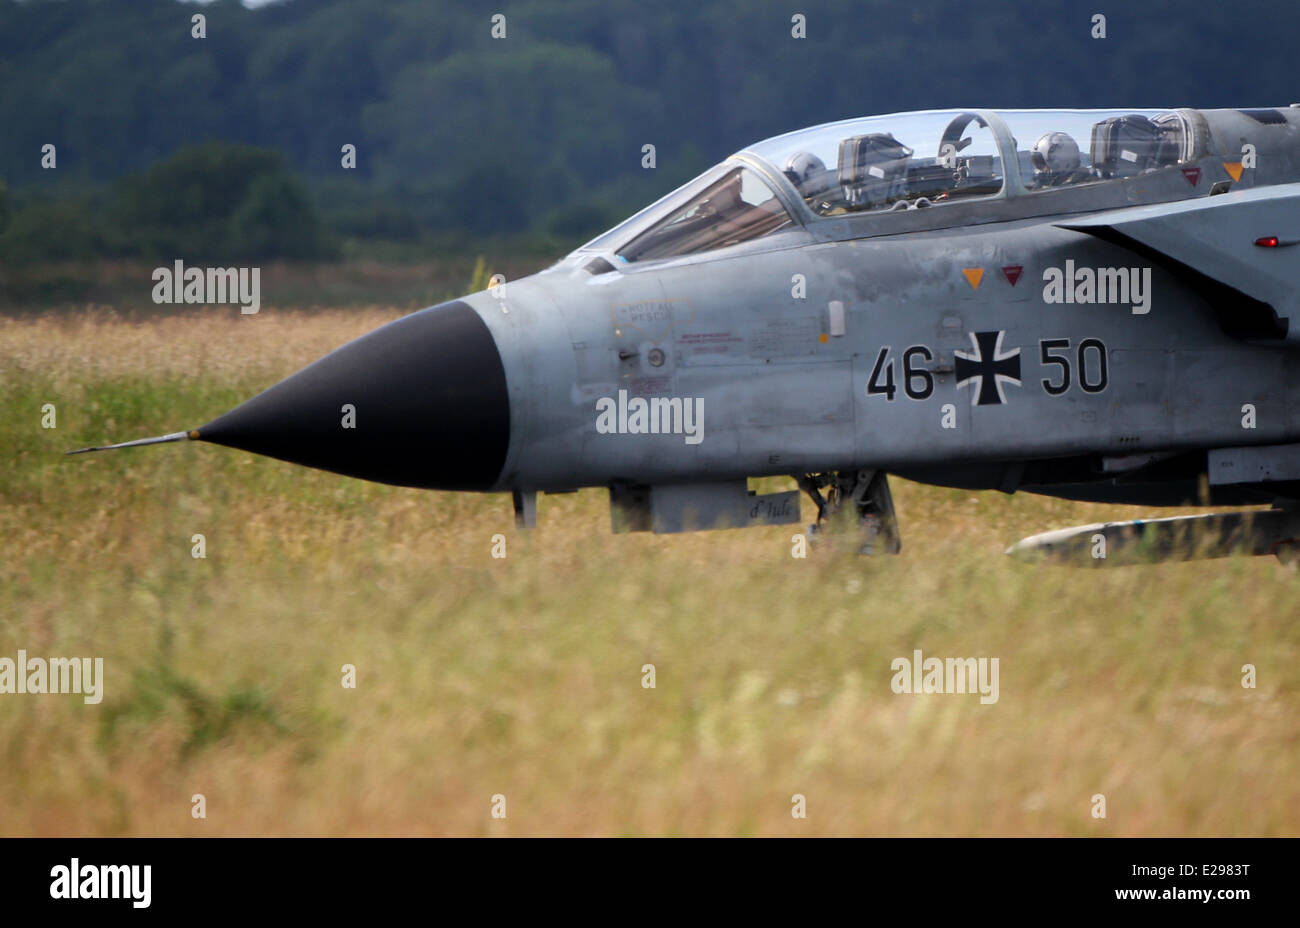 Jagel, Deutschland. 17. Juni 2014. Ein Tornado Kampfjet landet auf dem Militärflugplatz in Jagel, Deutschland, 17. Juni 2014. Die NATO-Luft-Übung "Tiger Meet" stattfindet in Jagel mit 1.100 Soldaten aus 18 Ländern. Foto: AXEL HEIMKEN/Dpa/Alamy Live News Stockfoto